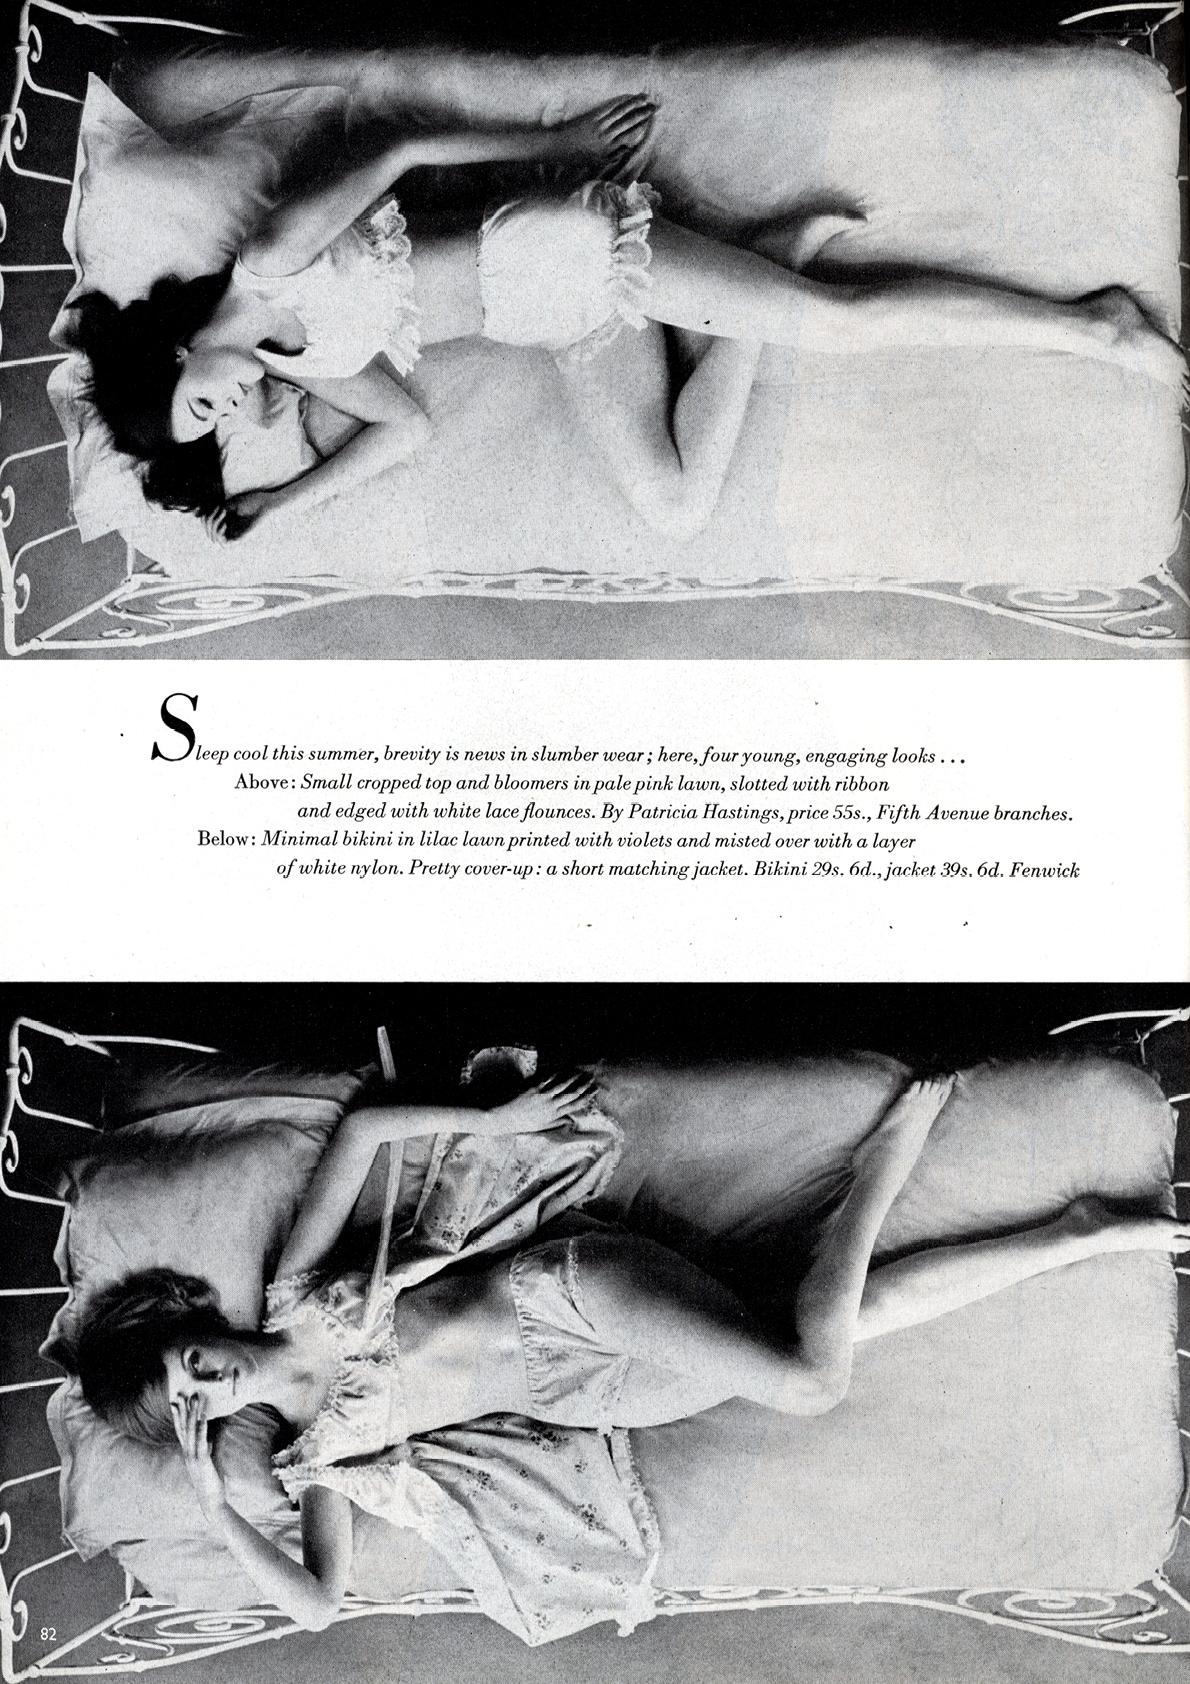 Vogue Magazine - Juin 1960 Plaisirs d'été, beauté cachée. L'état est très bon.

Le premier, intitulé 